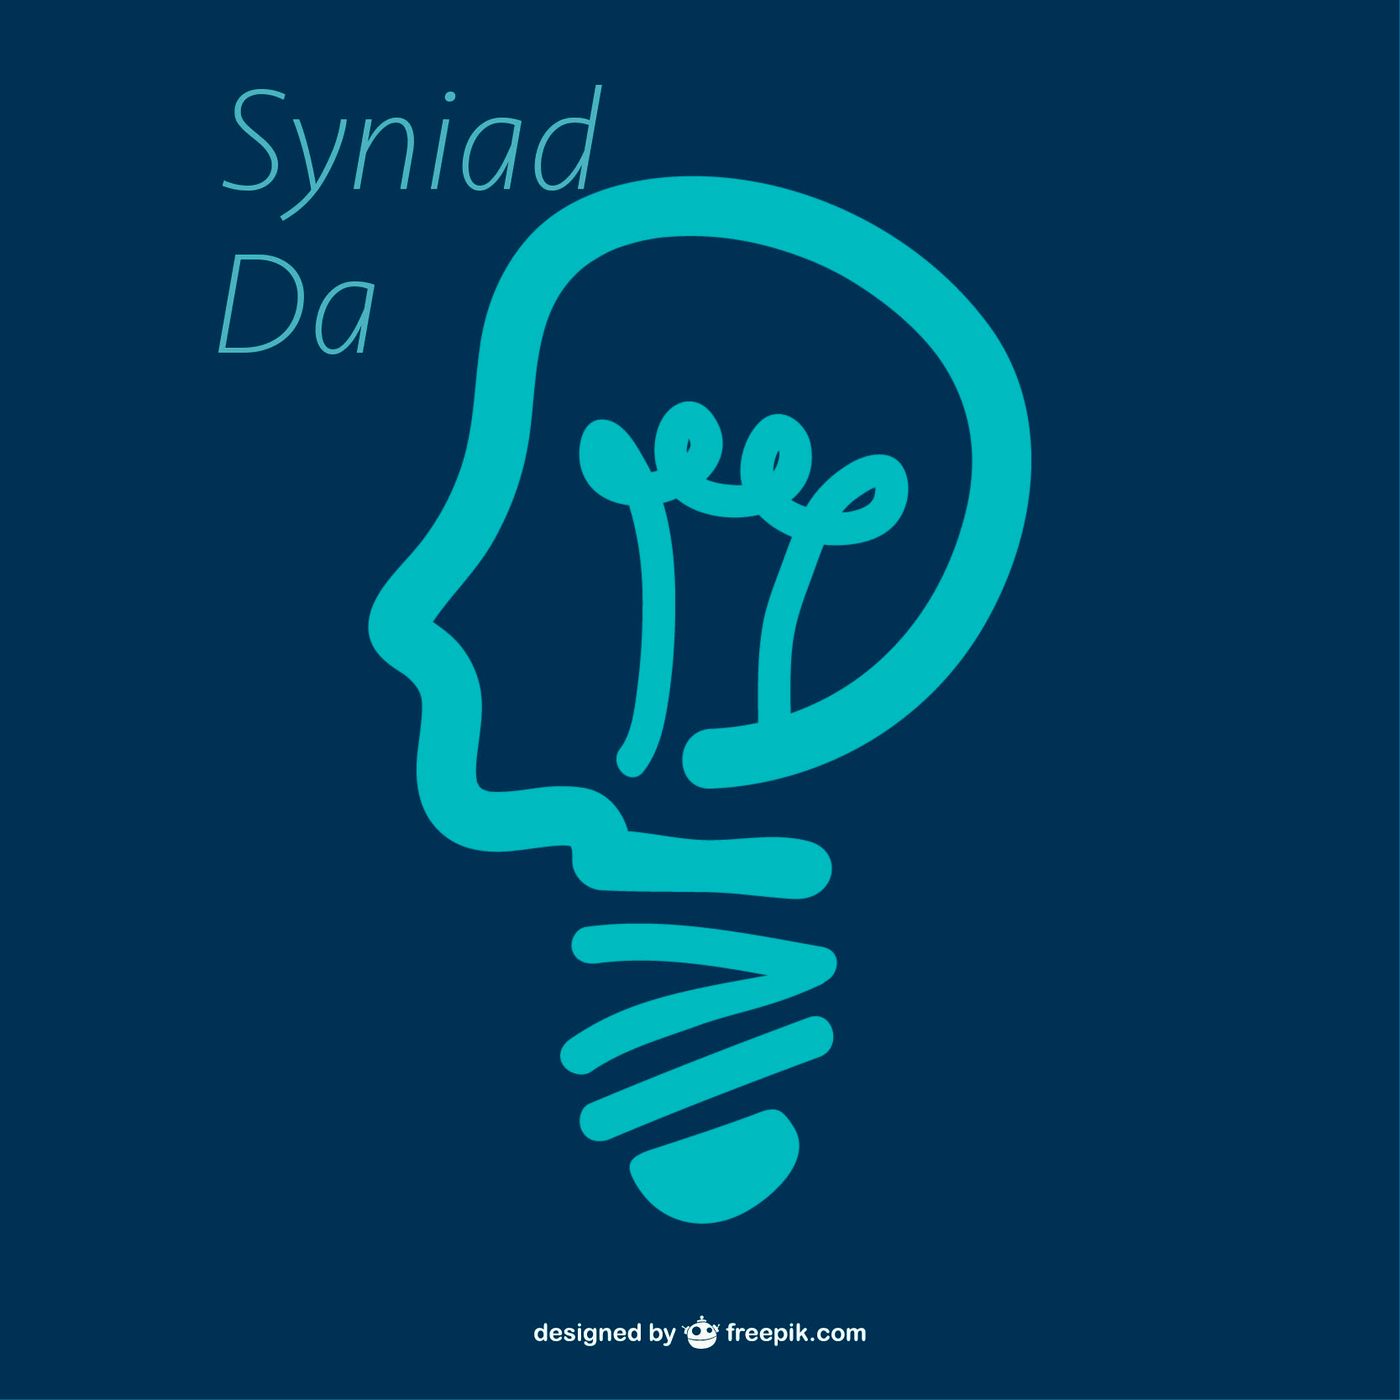 SyniadDa